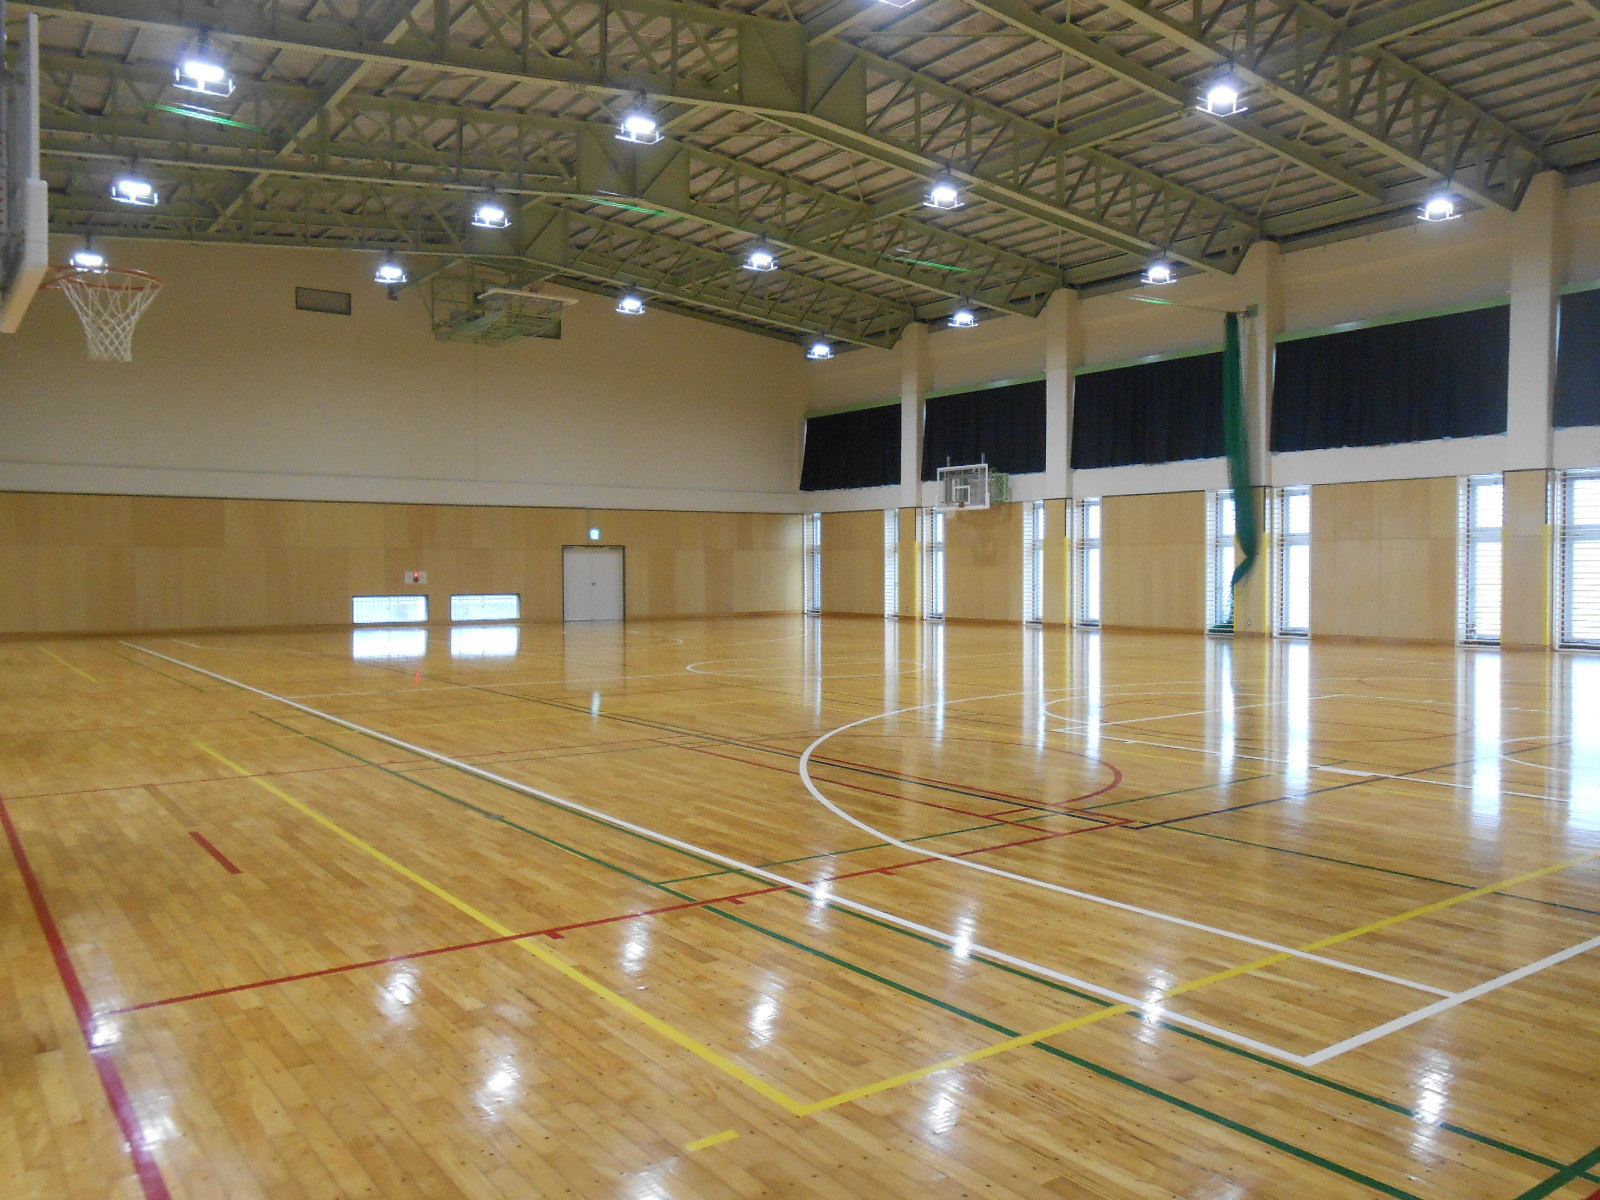 海洋センター体育館内はバスケットコート1面分の広さがあり、ミニバスコート2面併用ができるため、バスケットゴールが6つ設置されている